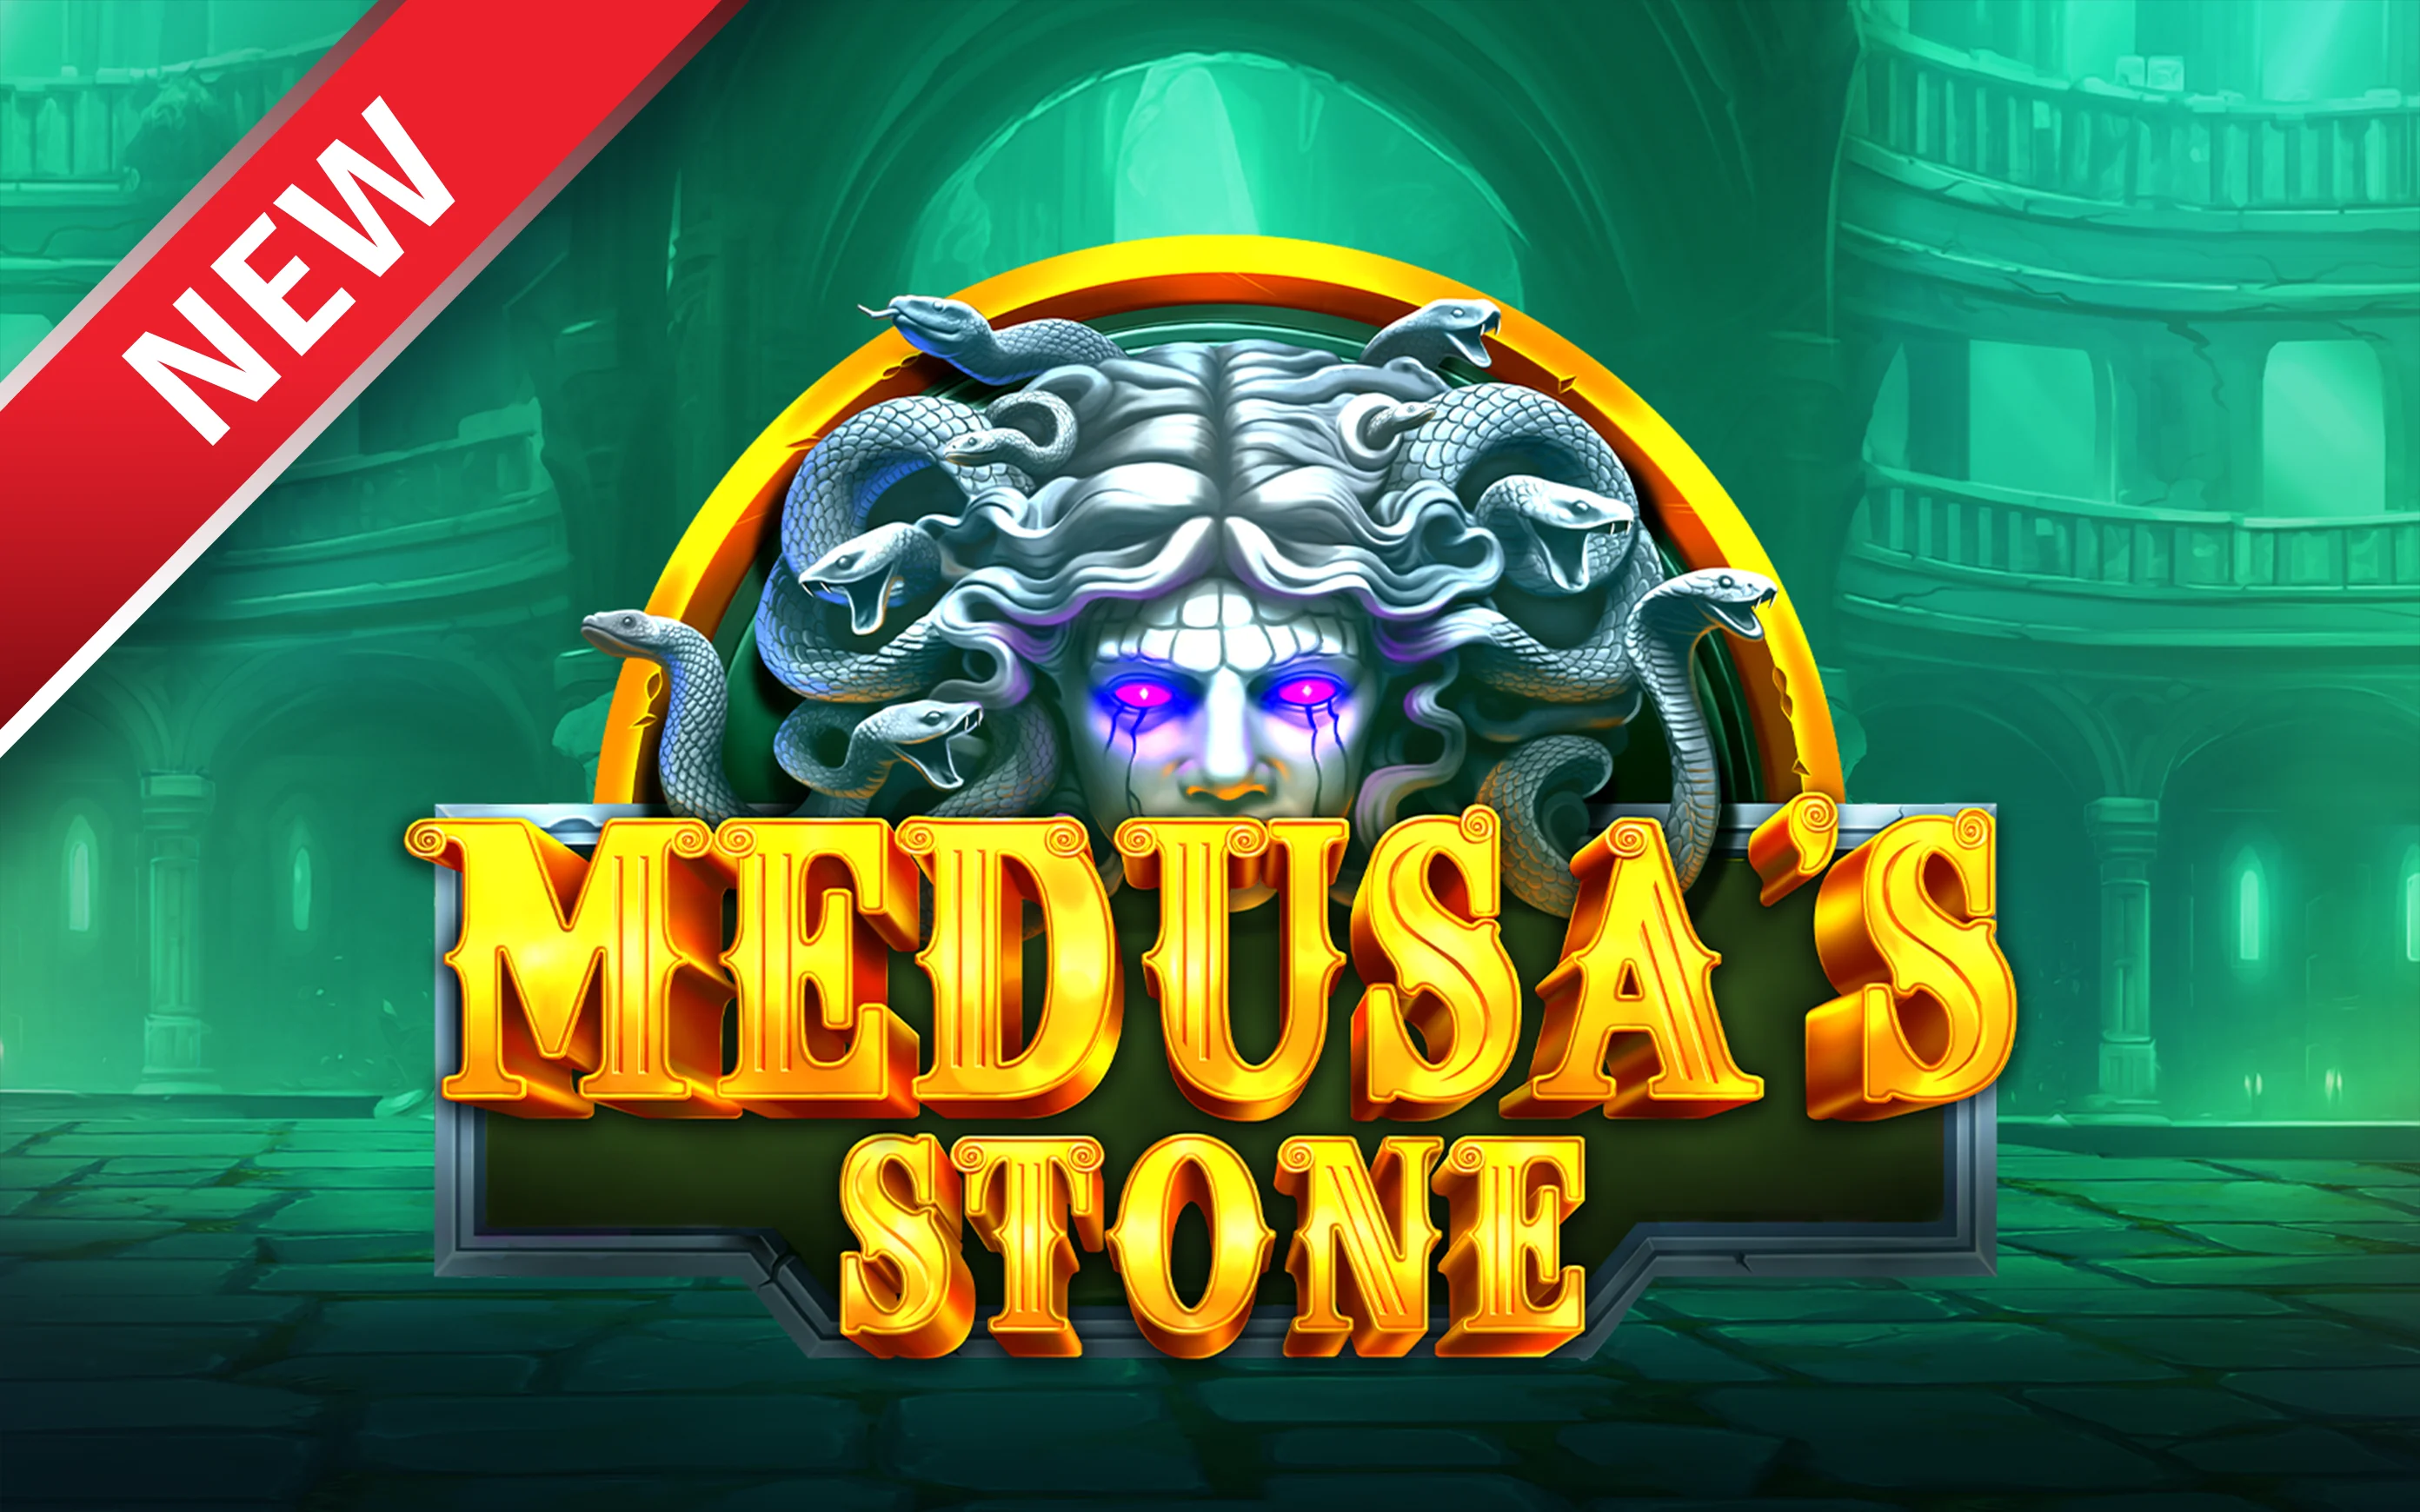 Jouer à Medusa’s Stone sur le casino en ligne Starcasino.be